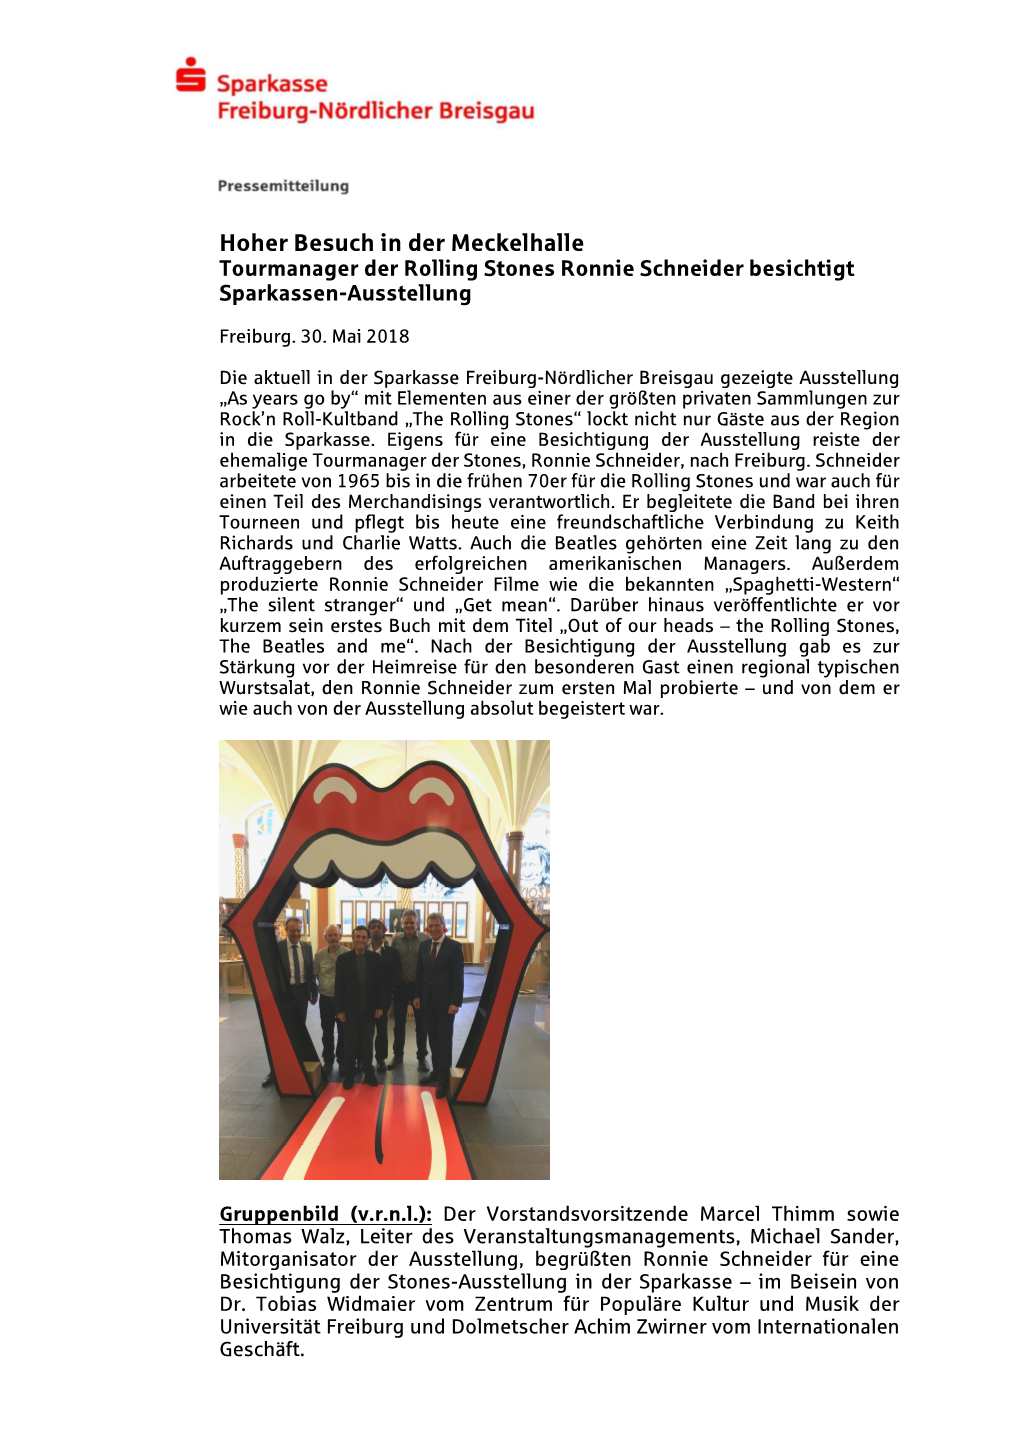 Hoher Besuch in Der Meckelhalle Tourmanager Der Rolling Stones Ronnie Schneider Besichtigt Sparkassen-Ausstellung